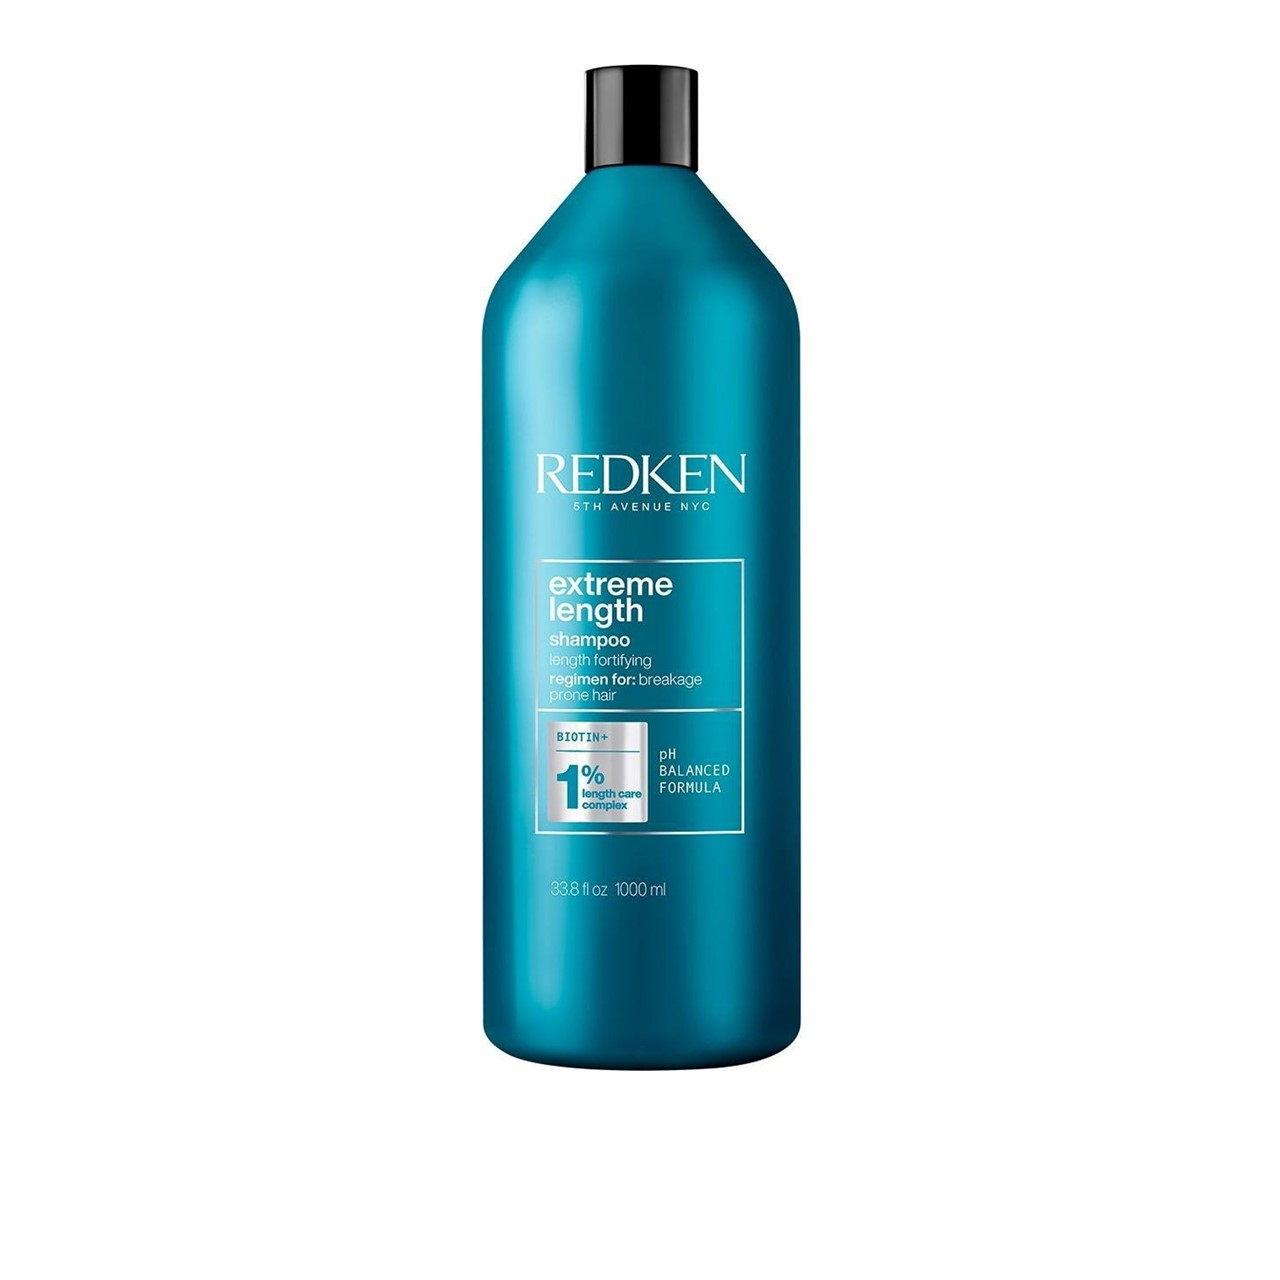 Redken Extreme Length Shampoo 1L (33.81fl oz)